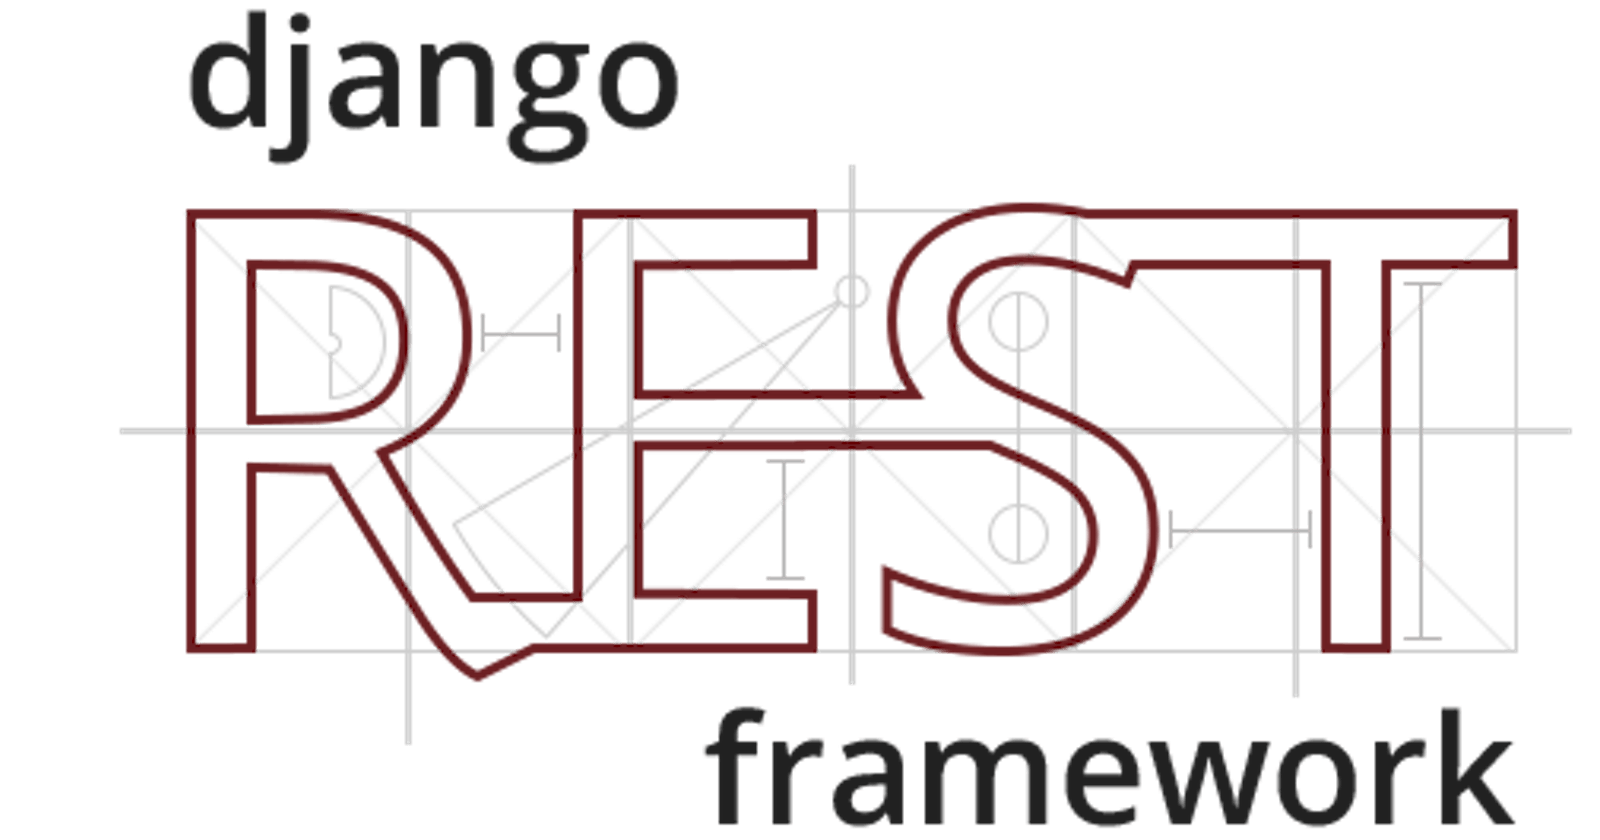 Building a REST API with Django REST Framework